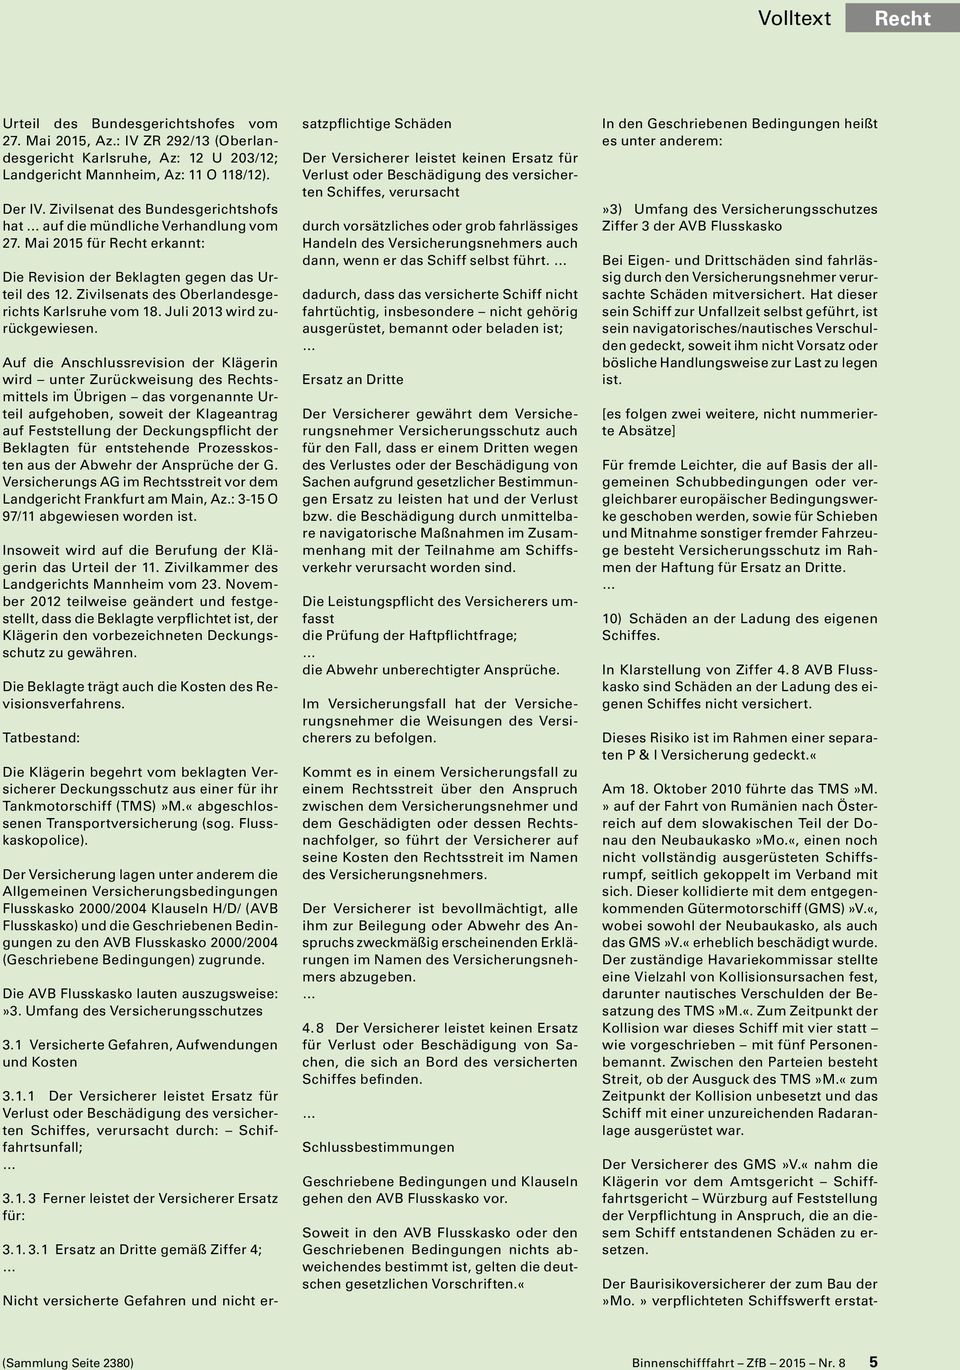 Zivilsenats des Oberlandesgerichts Karlsruhe vom 18. Juli 2013 wird zurückgewiesen.